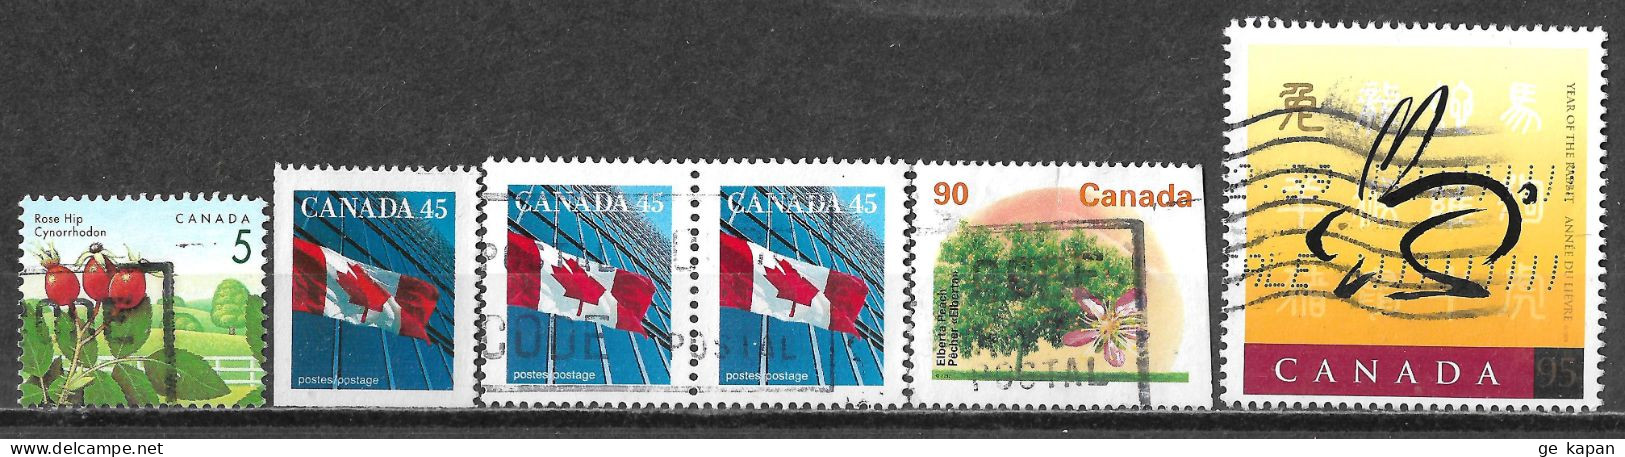 1991,1999 CANADA Set Of 6 USED Stamps (Scott # 1352,1361,1374,1768) CV $3.50 - Usados